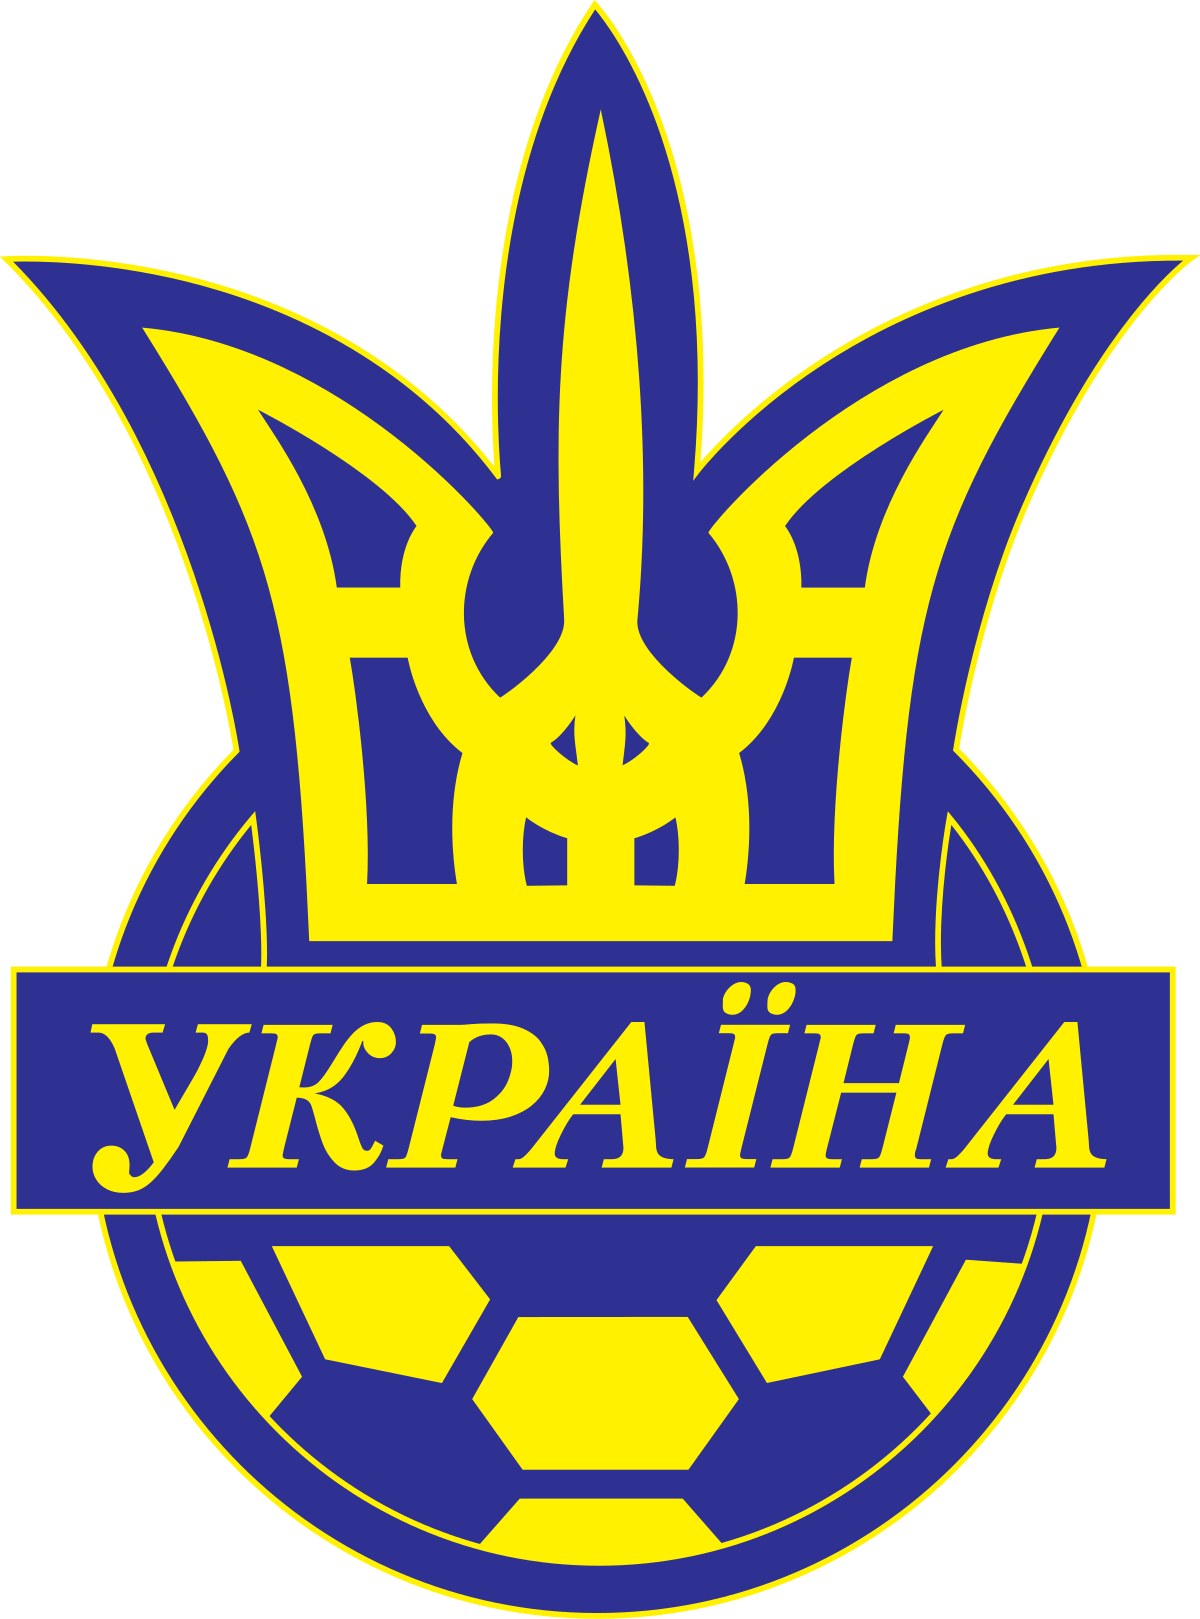 Ukrainian Premier League